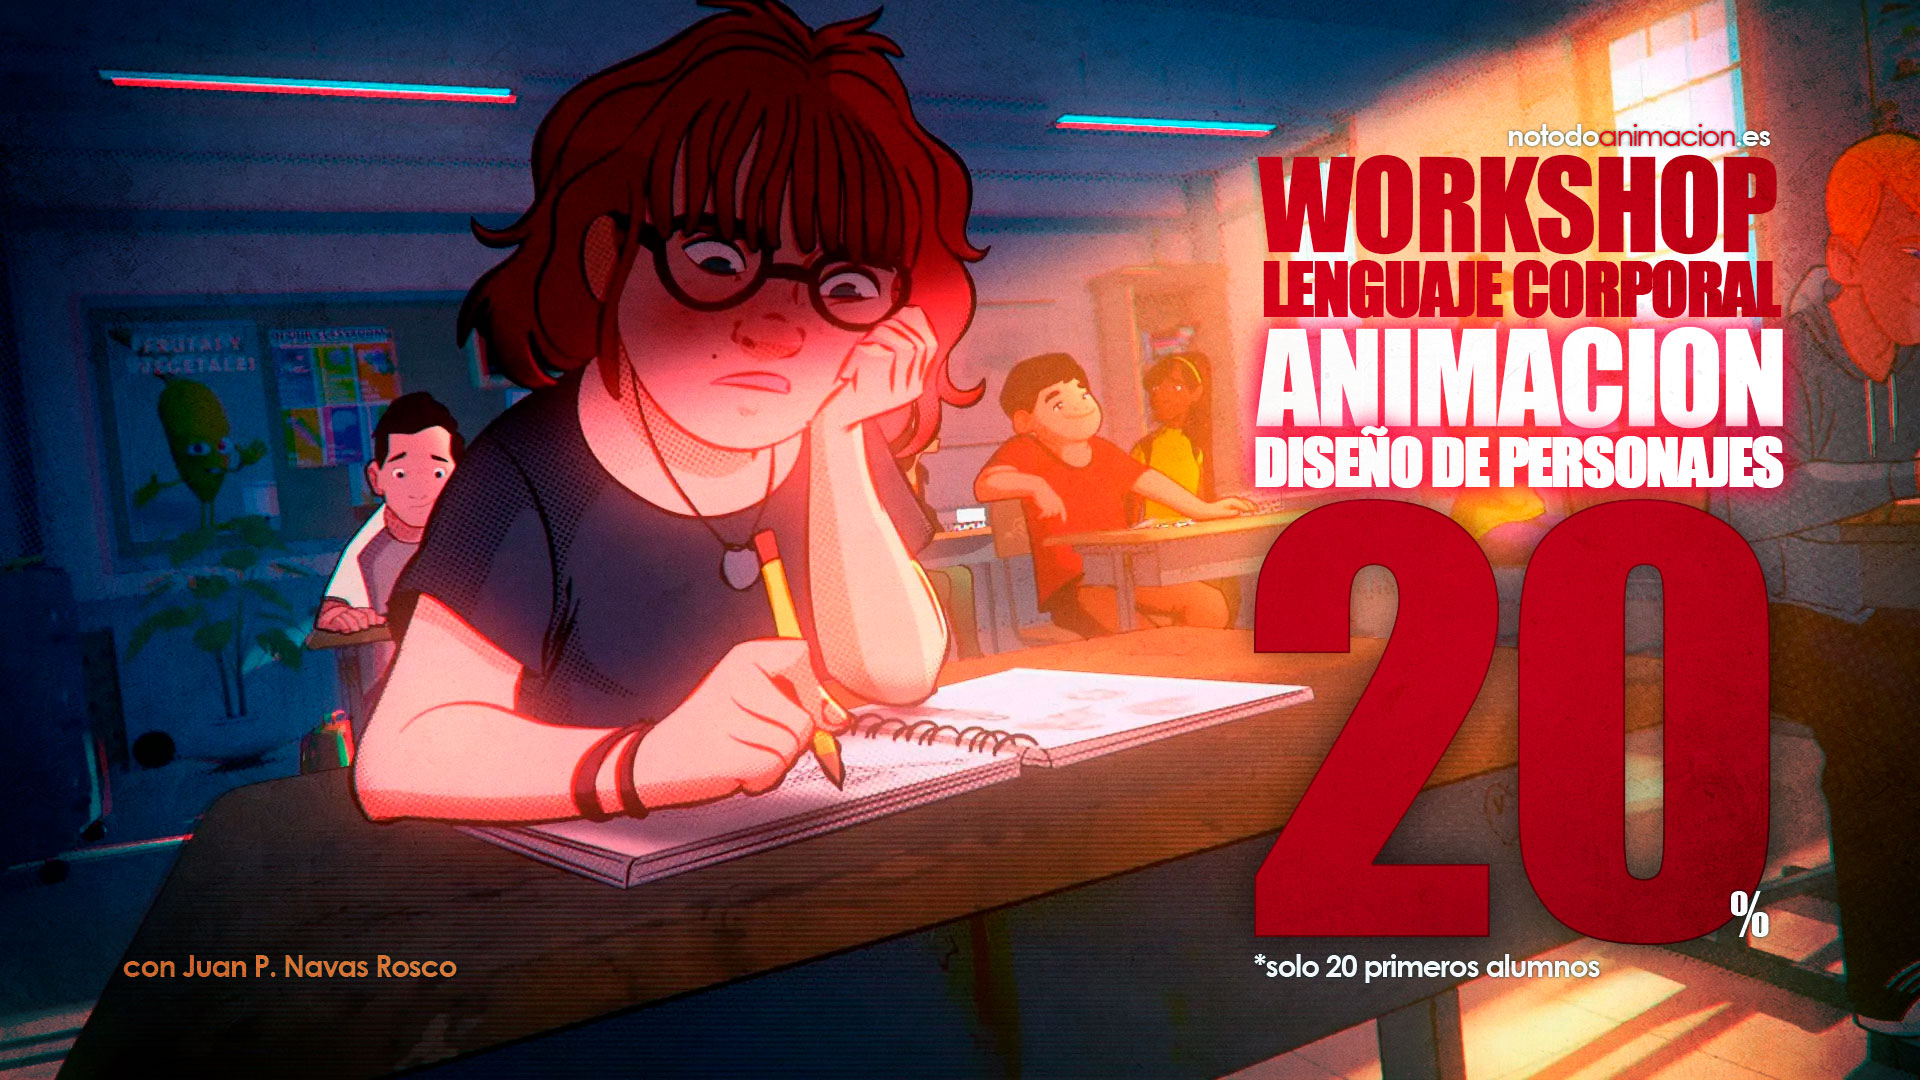 Workshop de Animación y Diseño de Personajes ❤️ EL LENGUAJE CORPORAL 👈 DESCUENTAZO PARA LOS 20 PRIMEROS